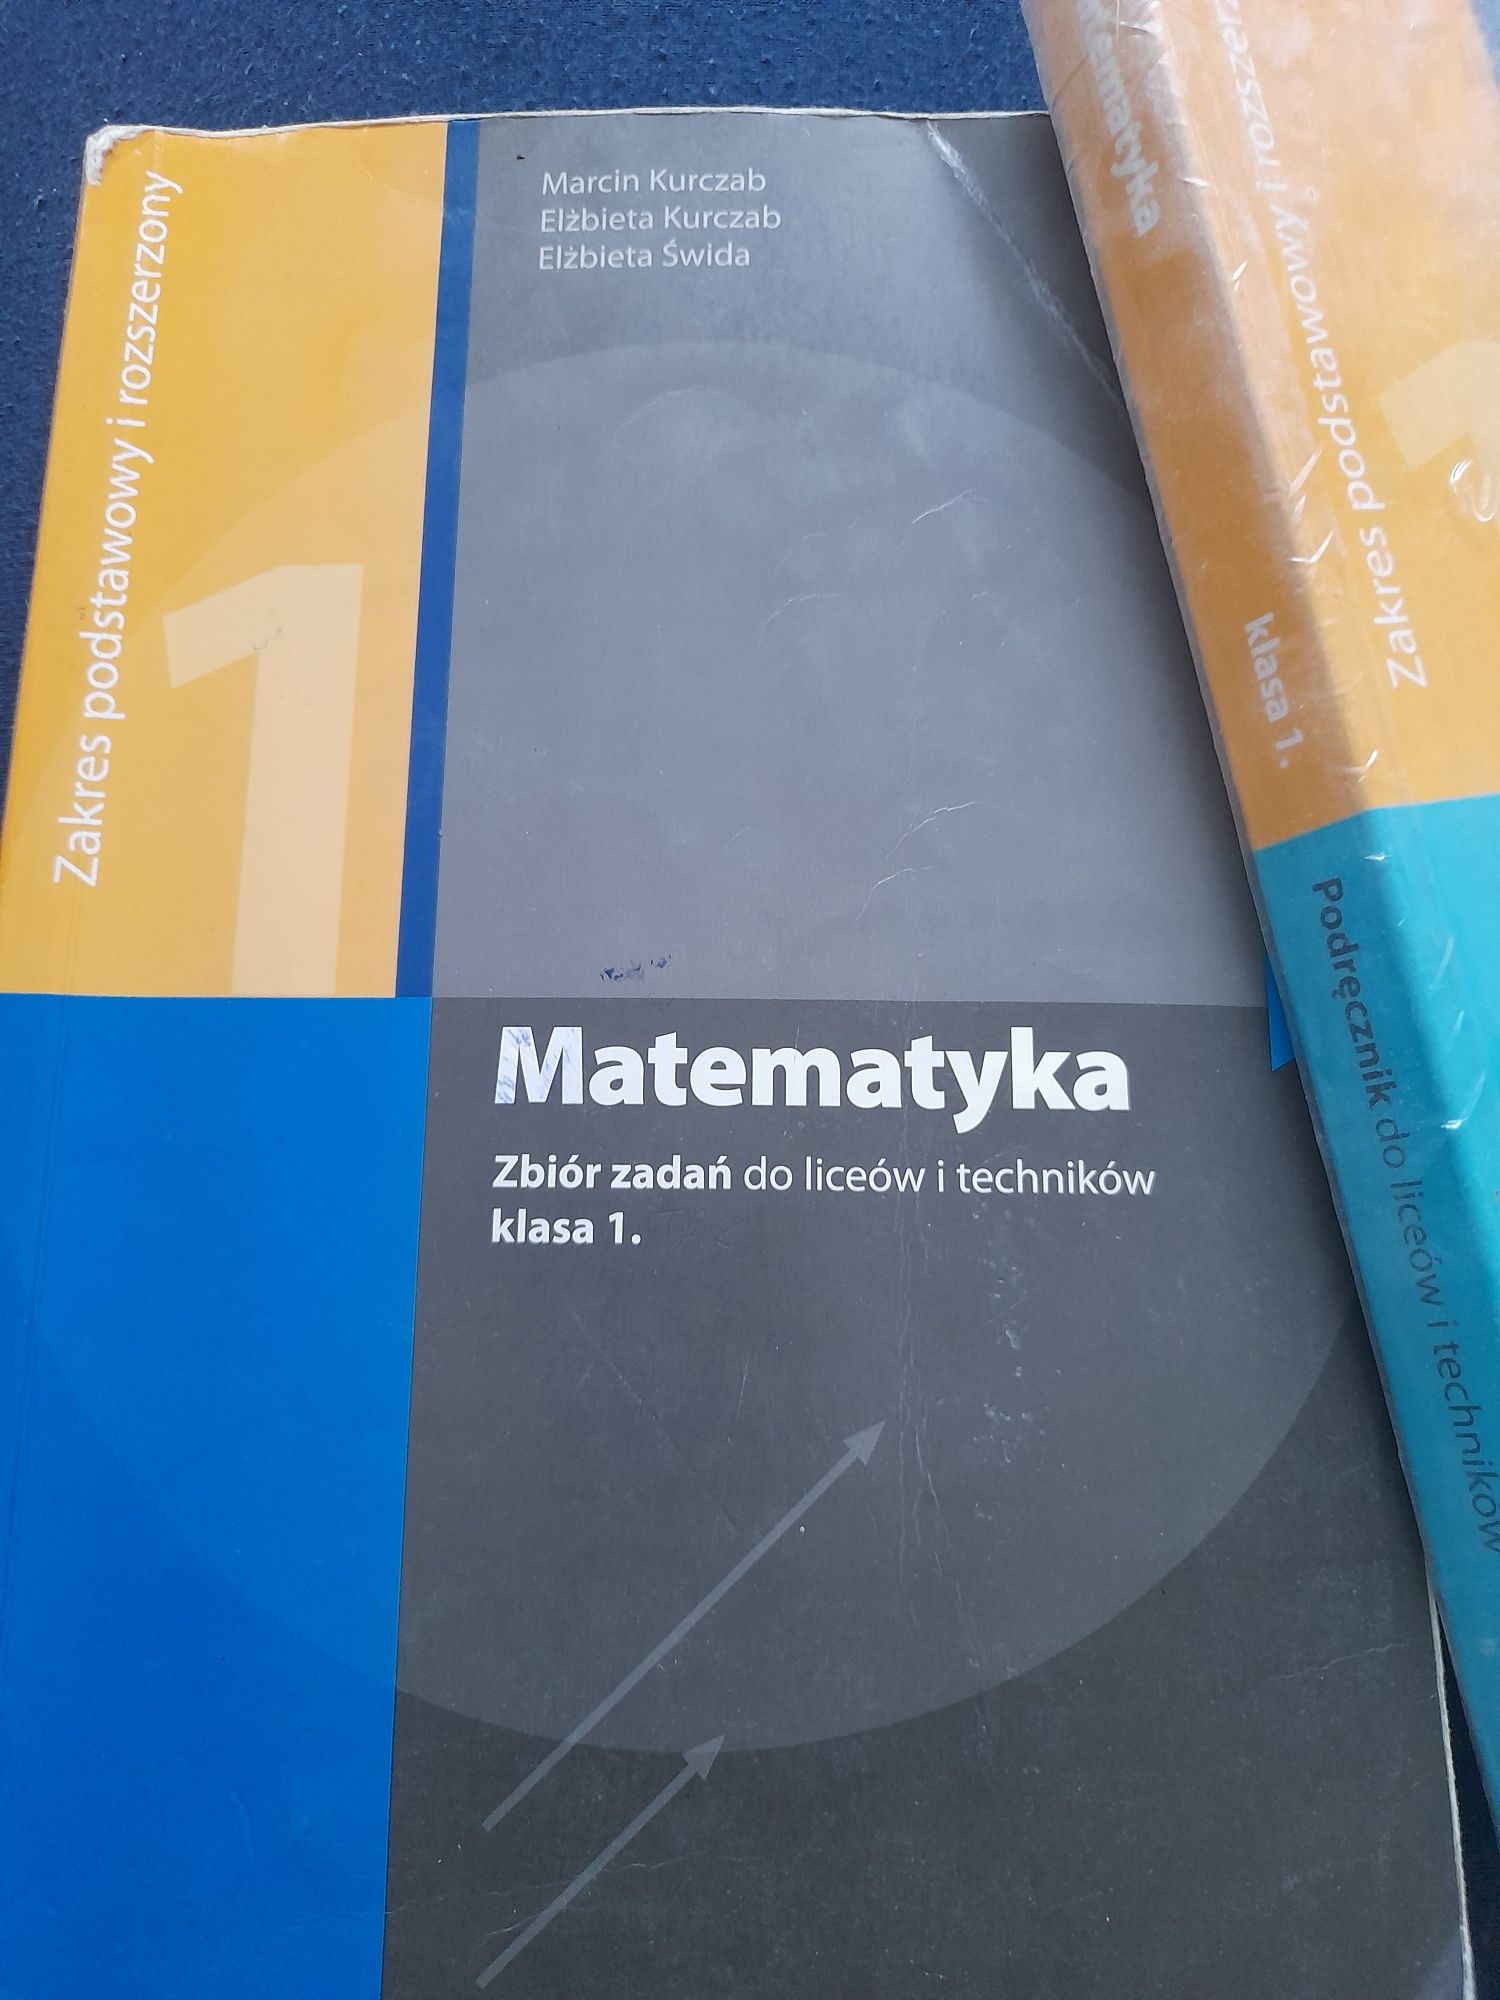 Podręcznik oraz zbiór zadań z matematyki kl.1